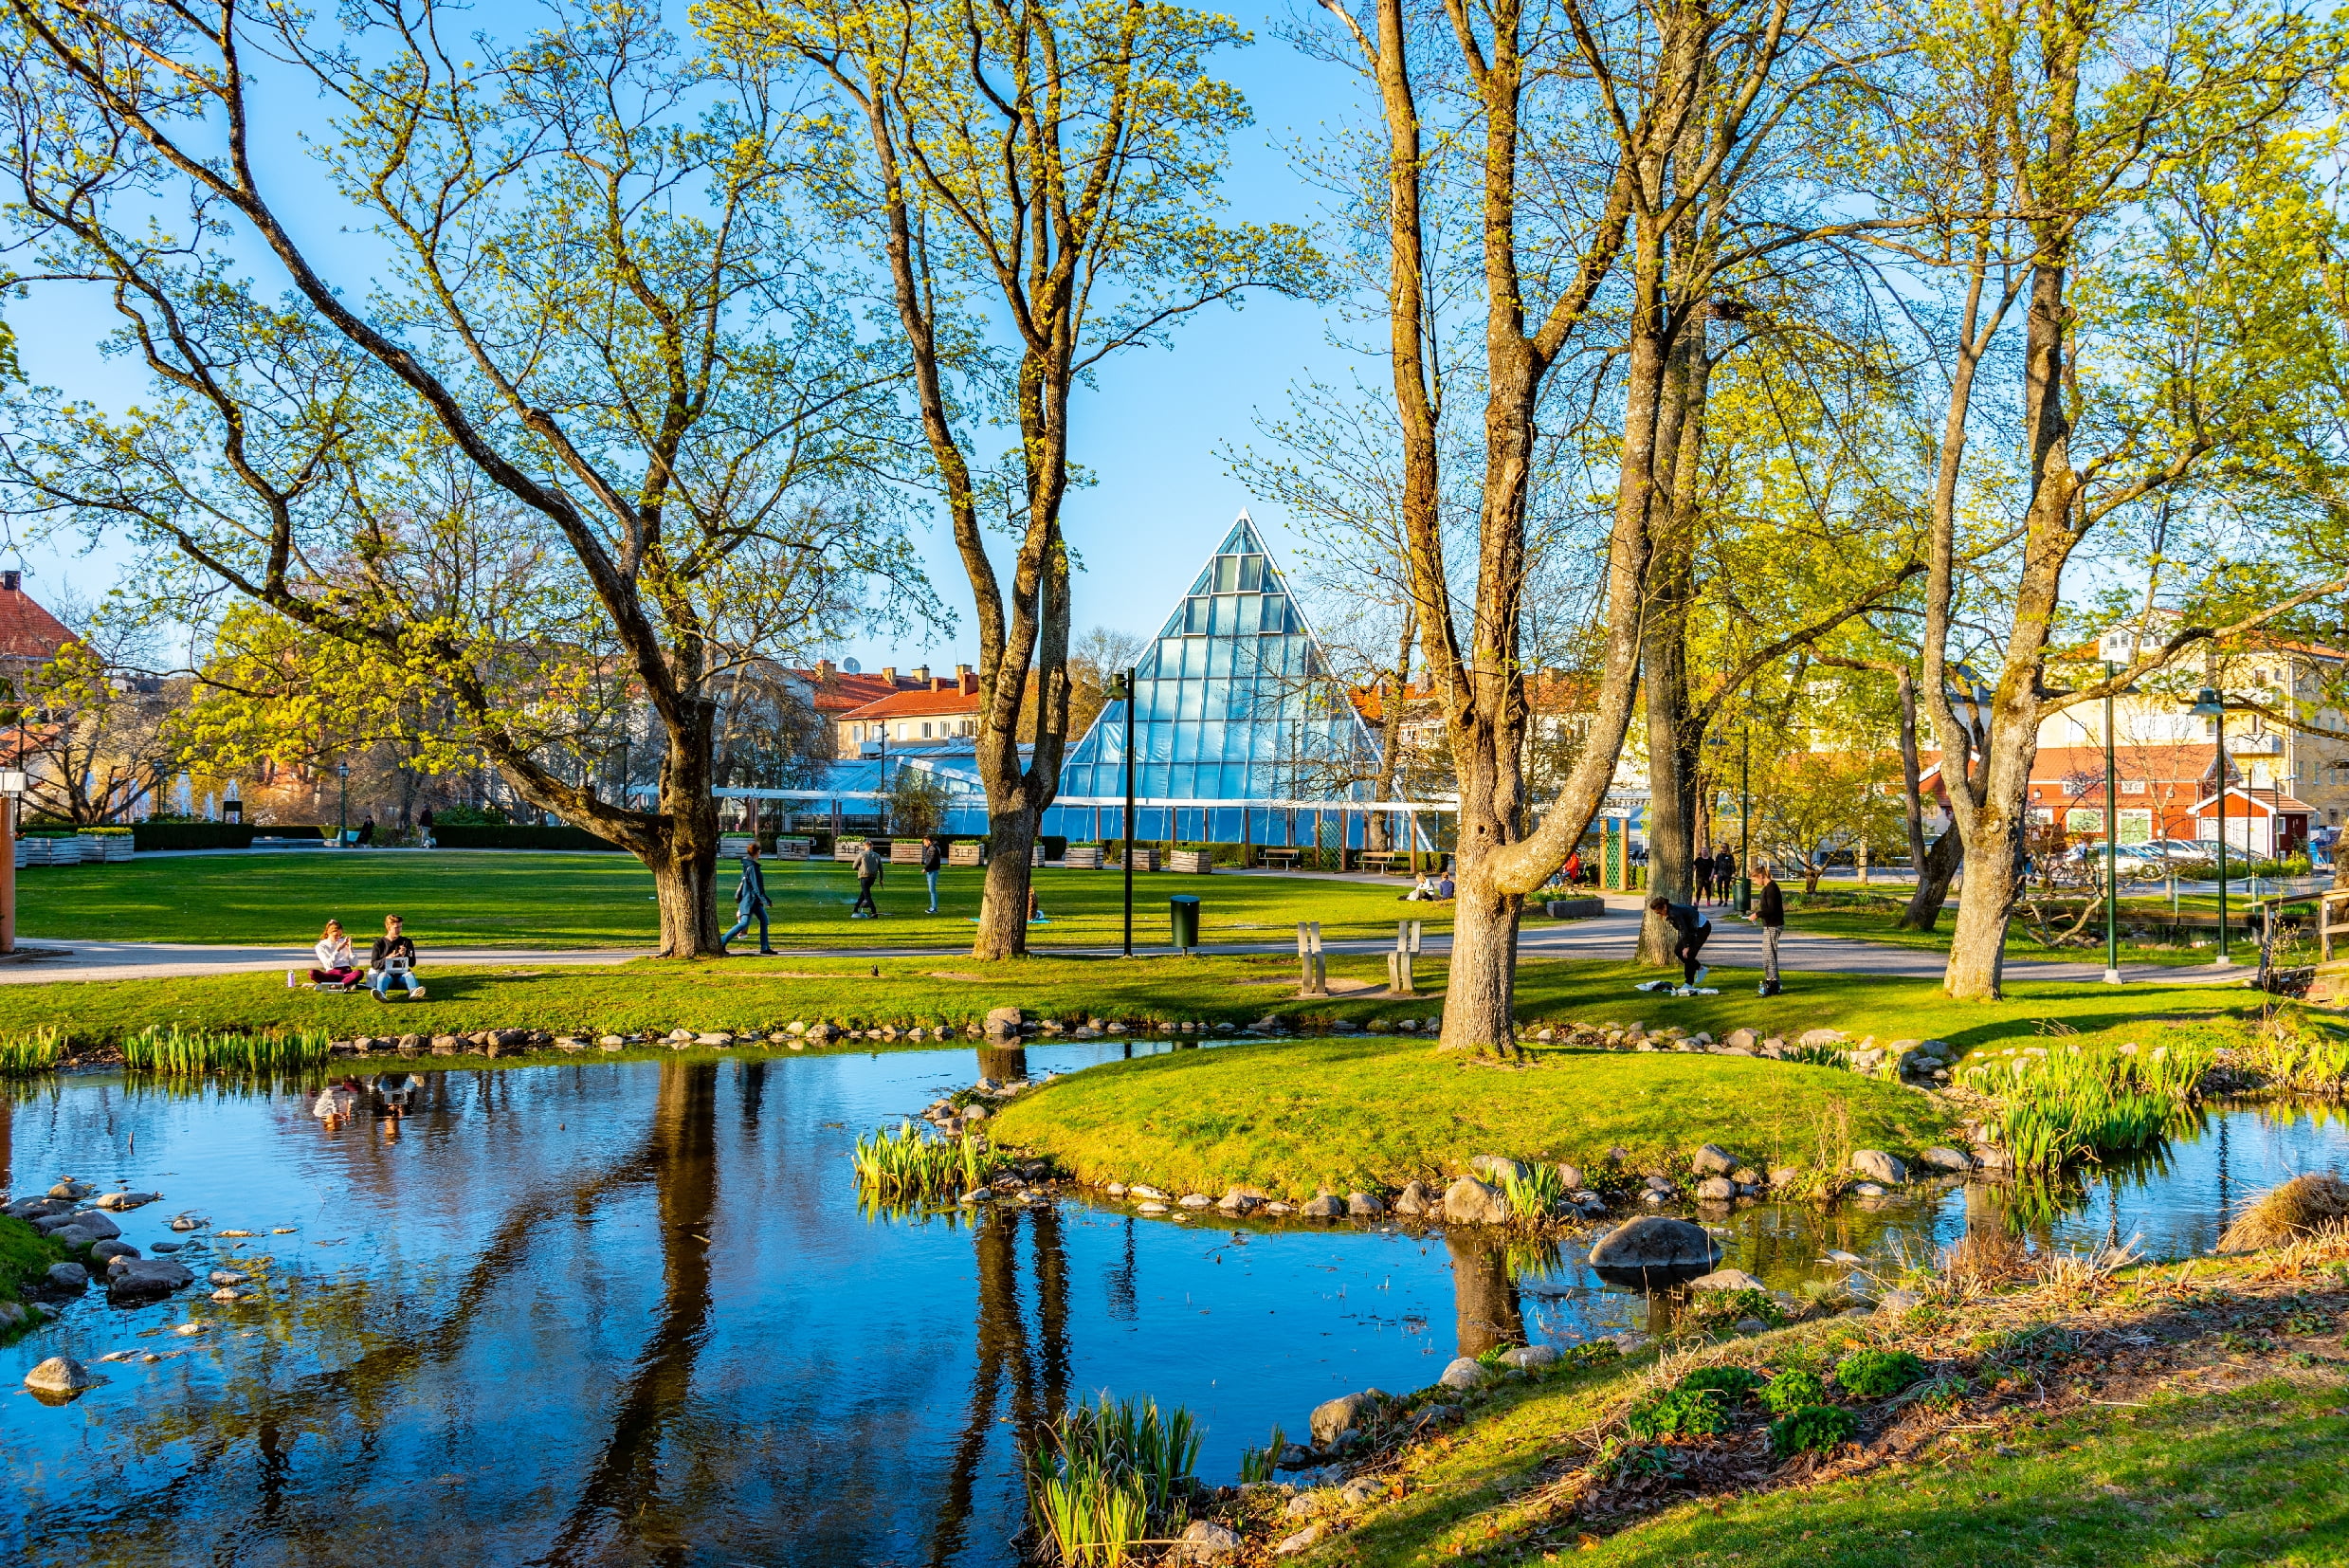 Visar en park i Linköping med ett stort växthus i mitten